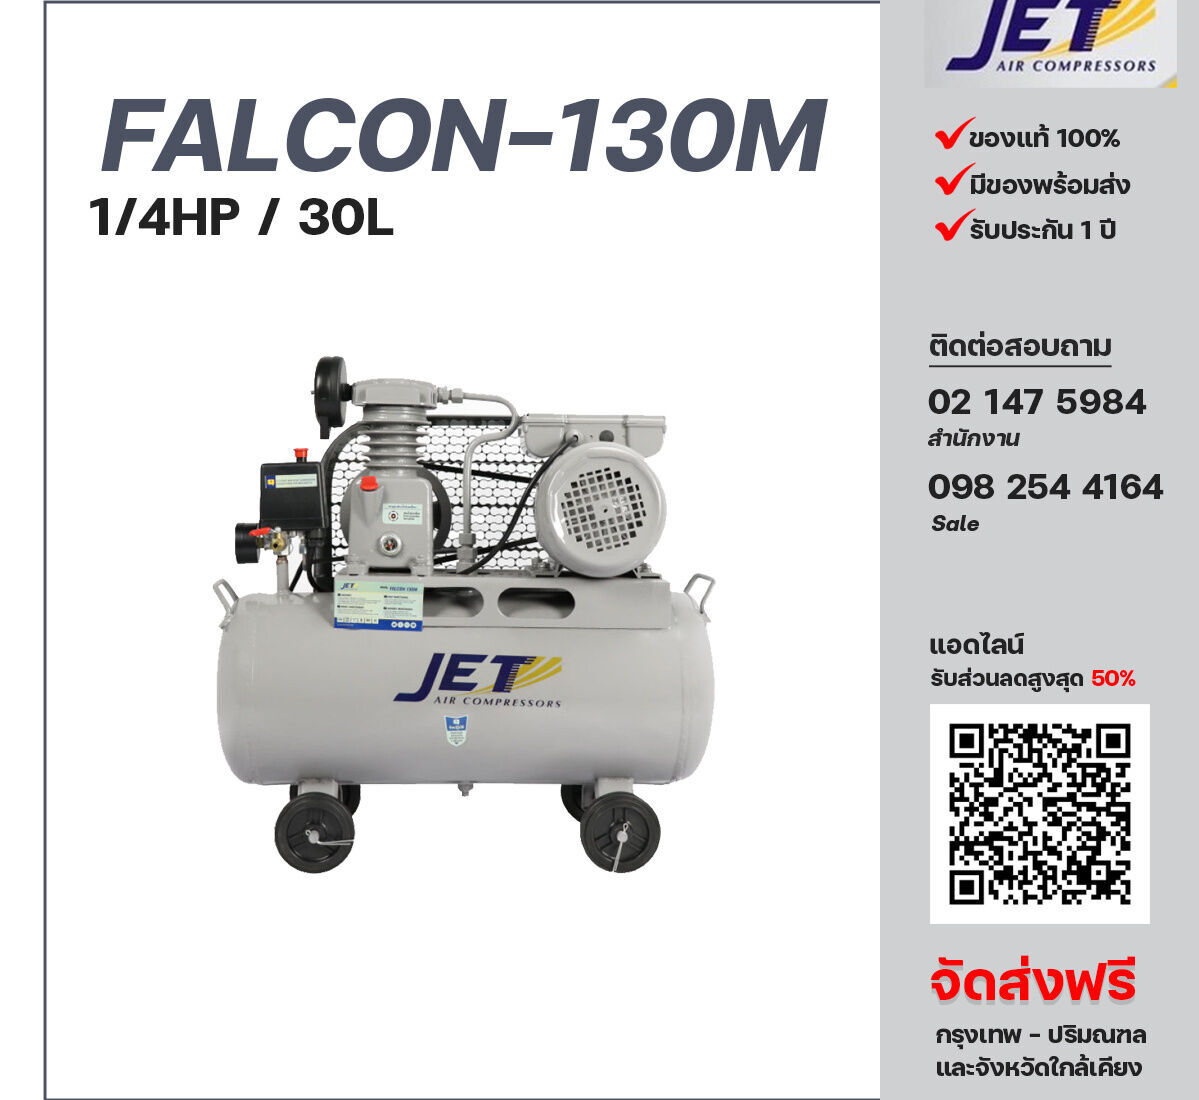 ปั๊มลมเจ็ท JET รุ่น FALCON-130M 220V ปั๊มลมลูกสูบ ขนาด 1 สูบ 1/4  แรงม้า 30 ลิตร JET พร้อมมอเตอร์ ไฟ 220V ส่งฟรี กรุงเทพฯ-ปริมณฑล รับประกัน 1 ปี